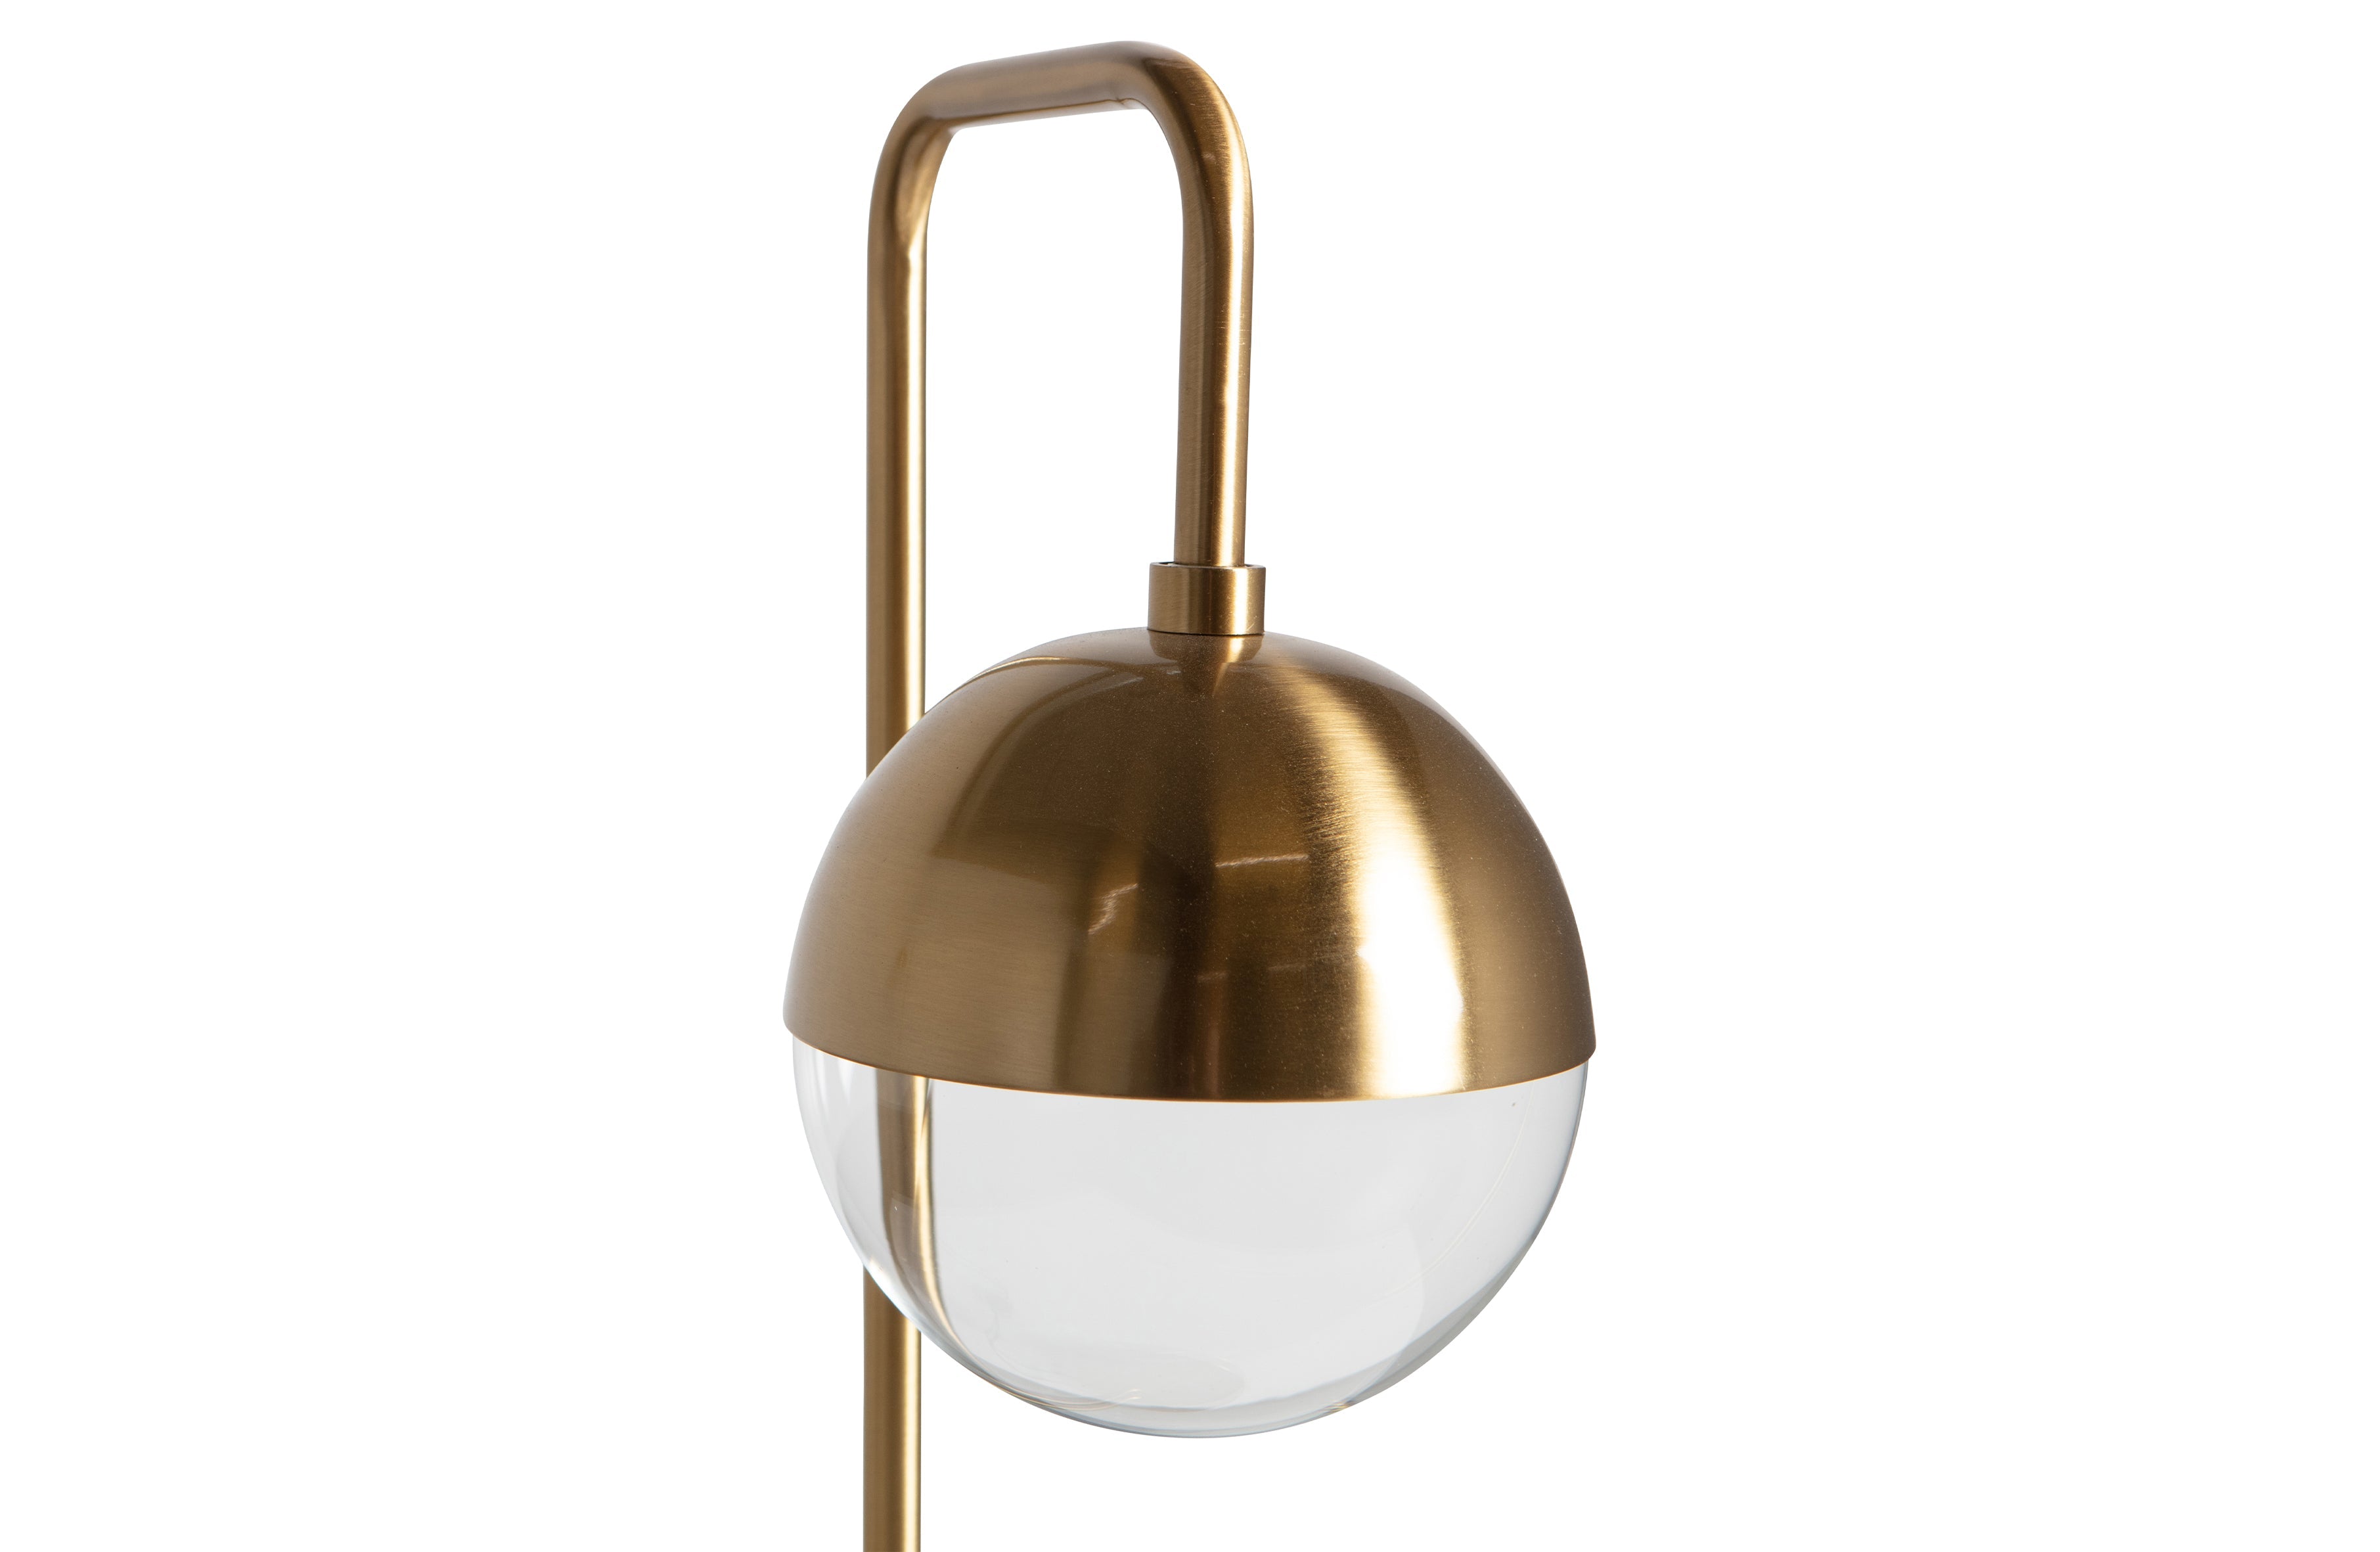 Globular Staande Lamp Metaal Antique Brass